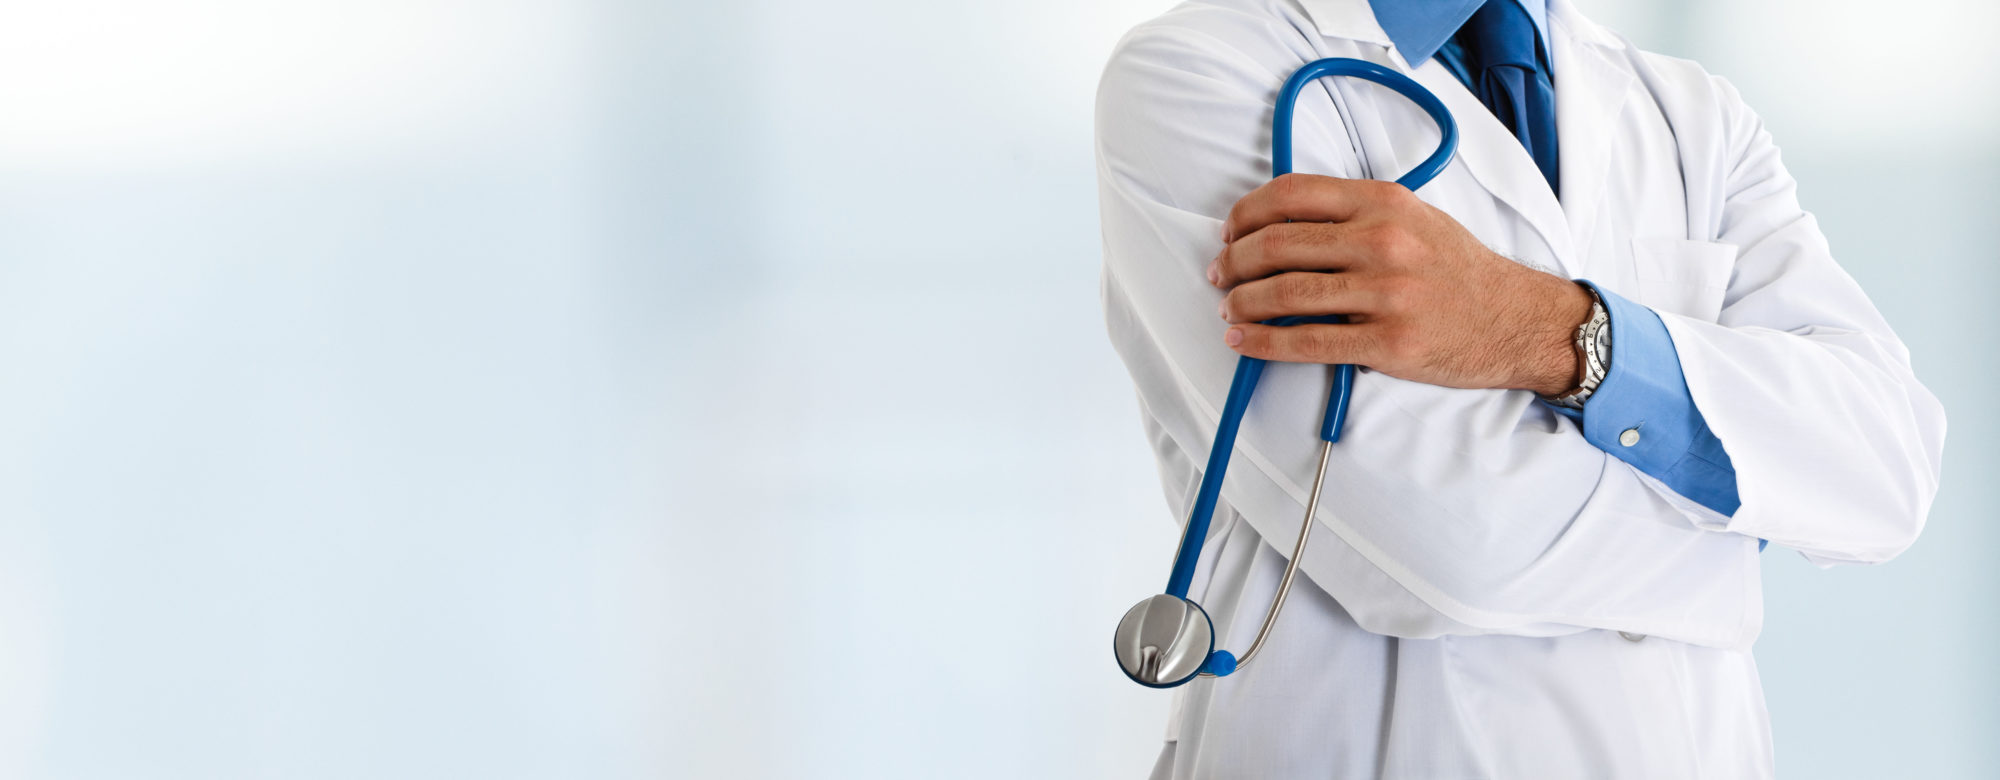 Τι αλλάζει στα κριτήρια πρόσληψης – αξιολόγησης γιατρών του ΕΣΥ